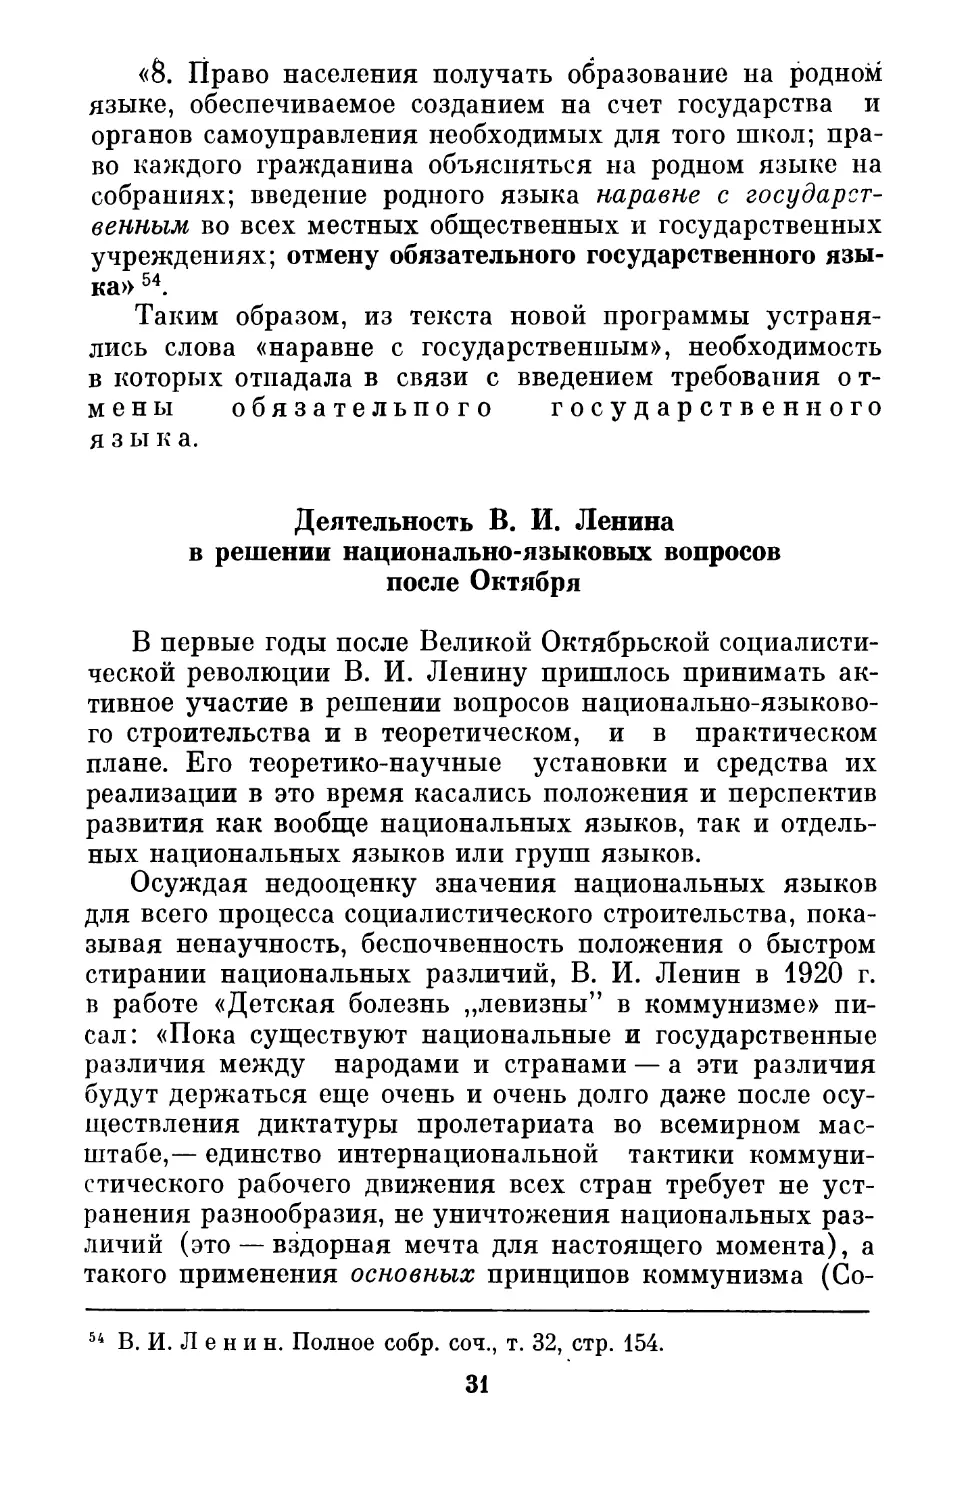 Деятельность  В.И. Ленина  в  решении  национально-языковых  вопросов  после  Октября